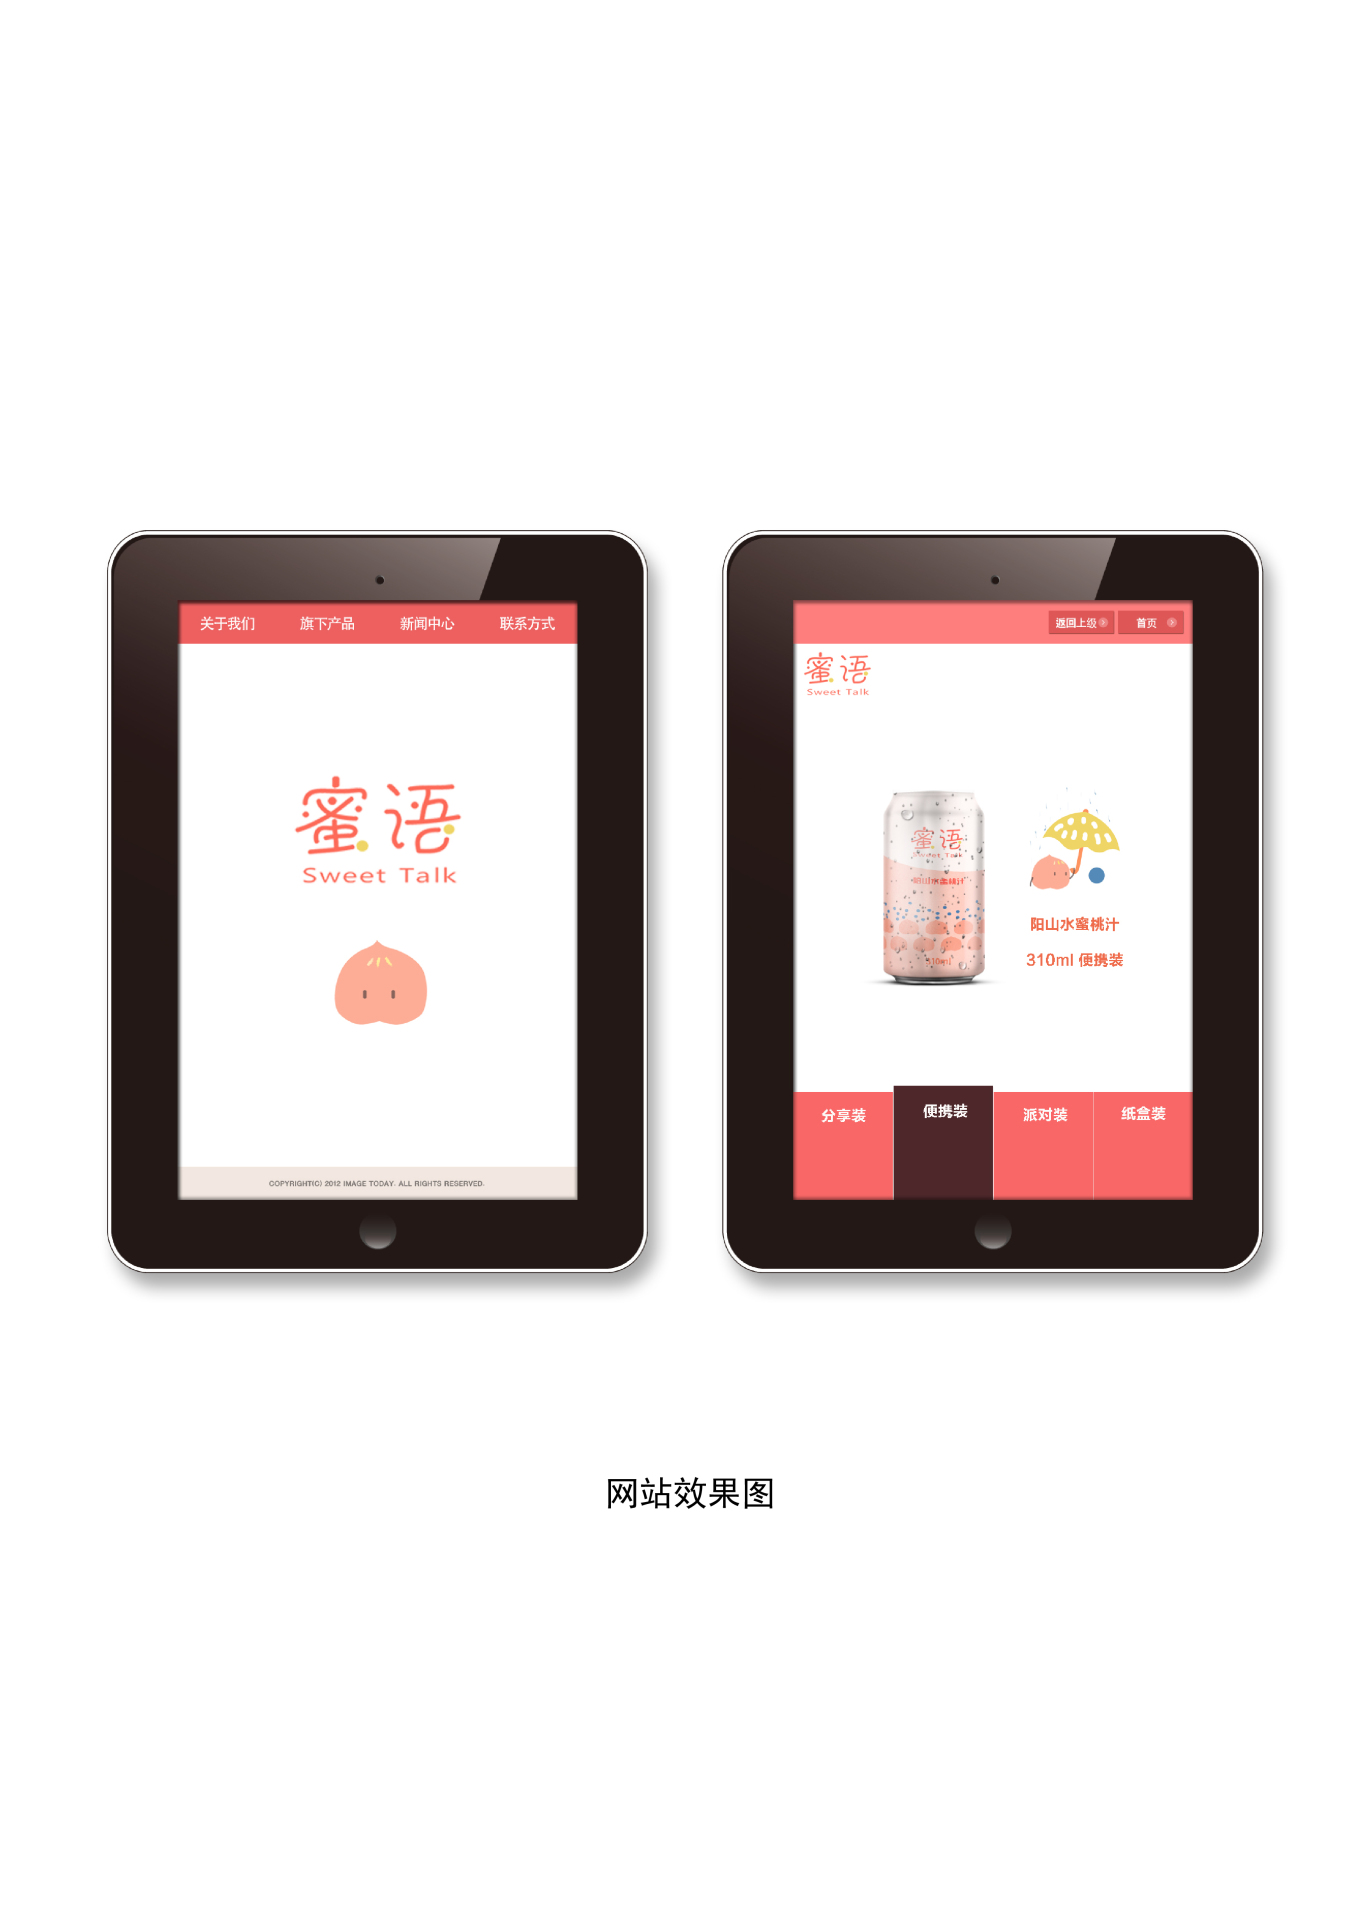 蜜语—水蜜桃汁品牌形象设计图8